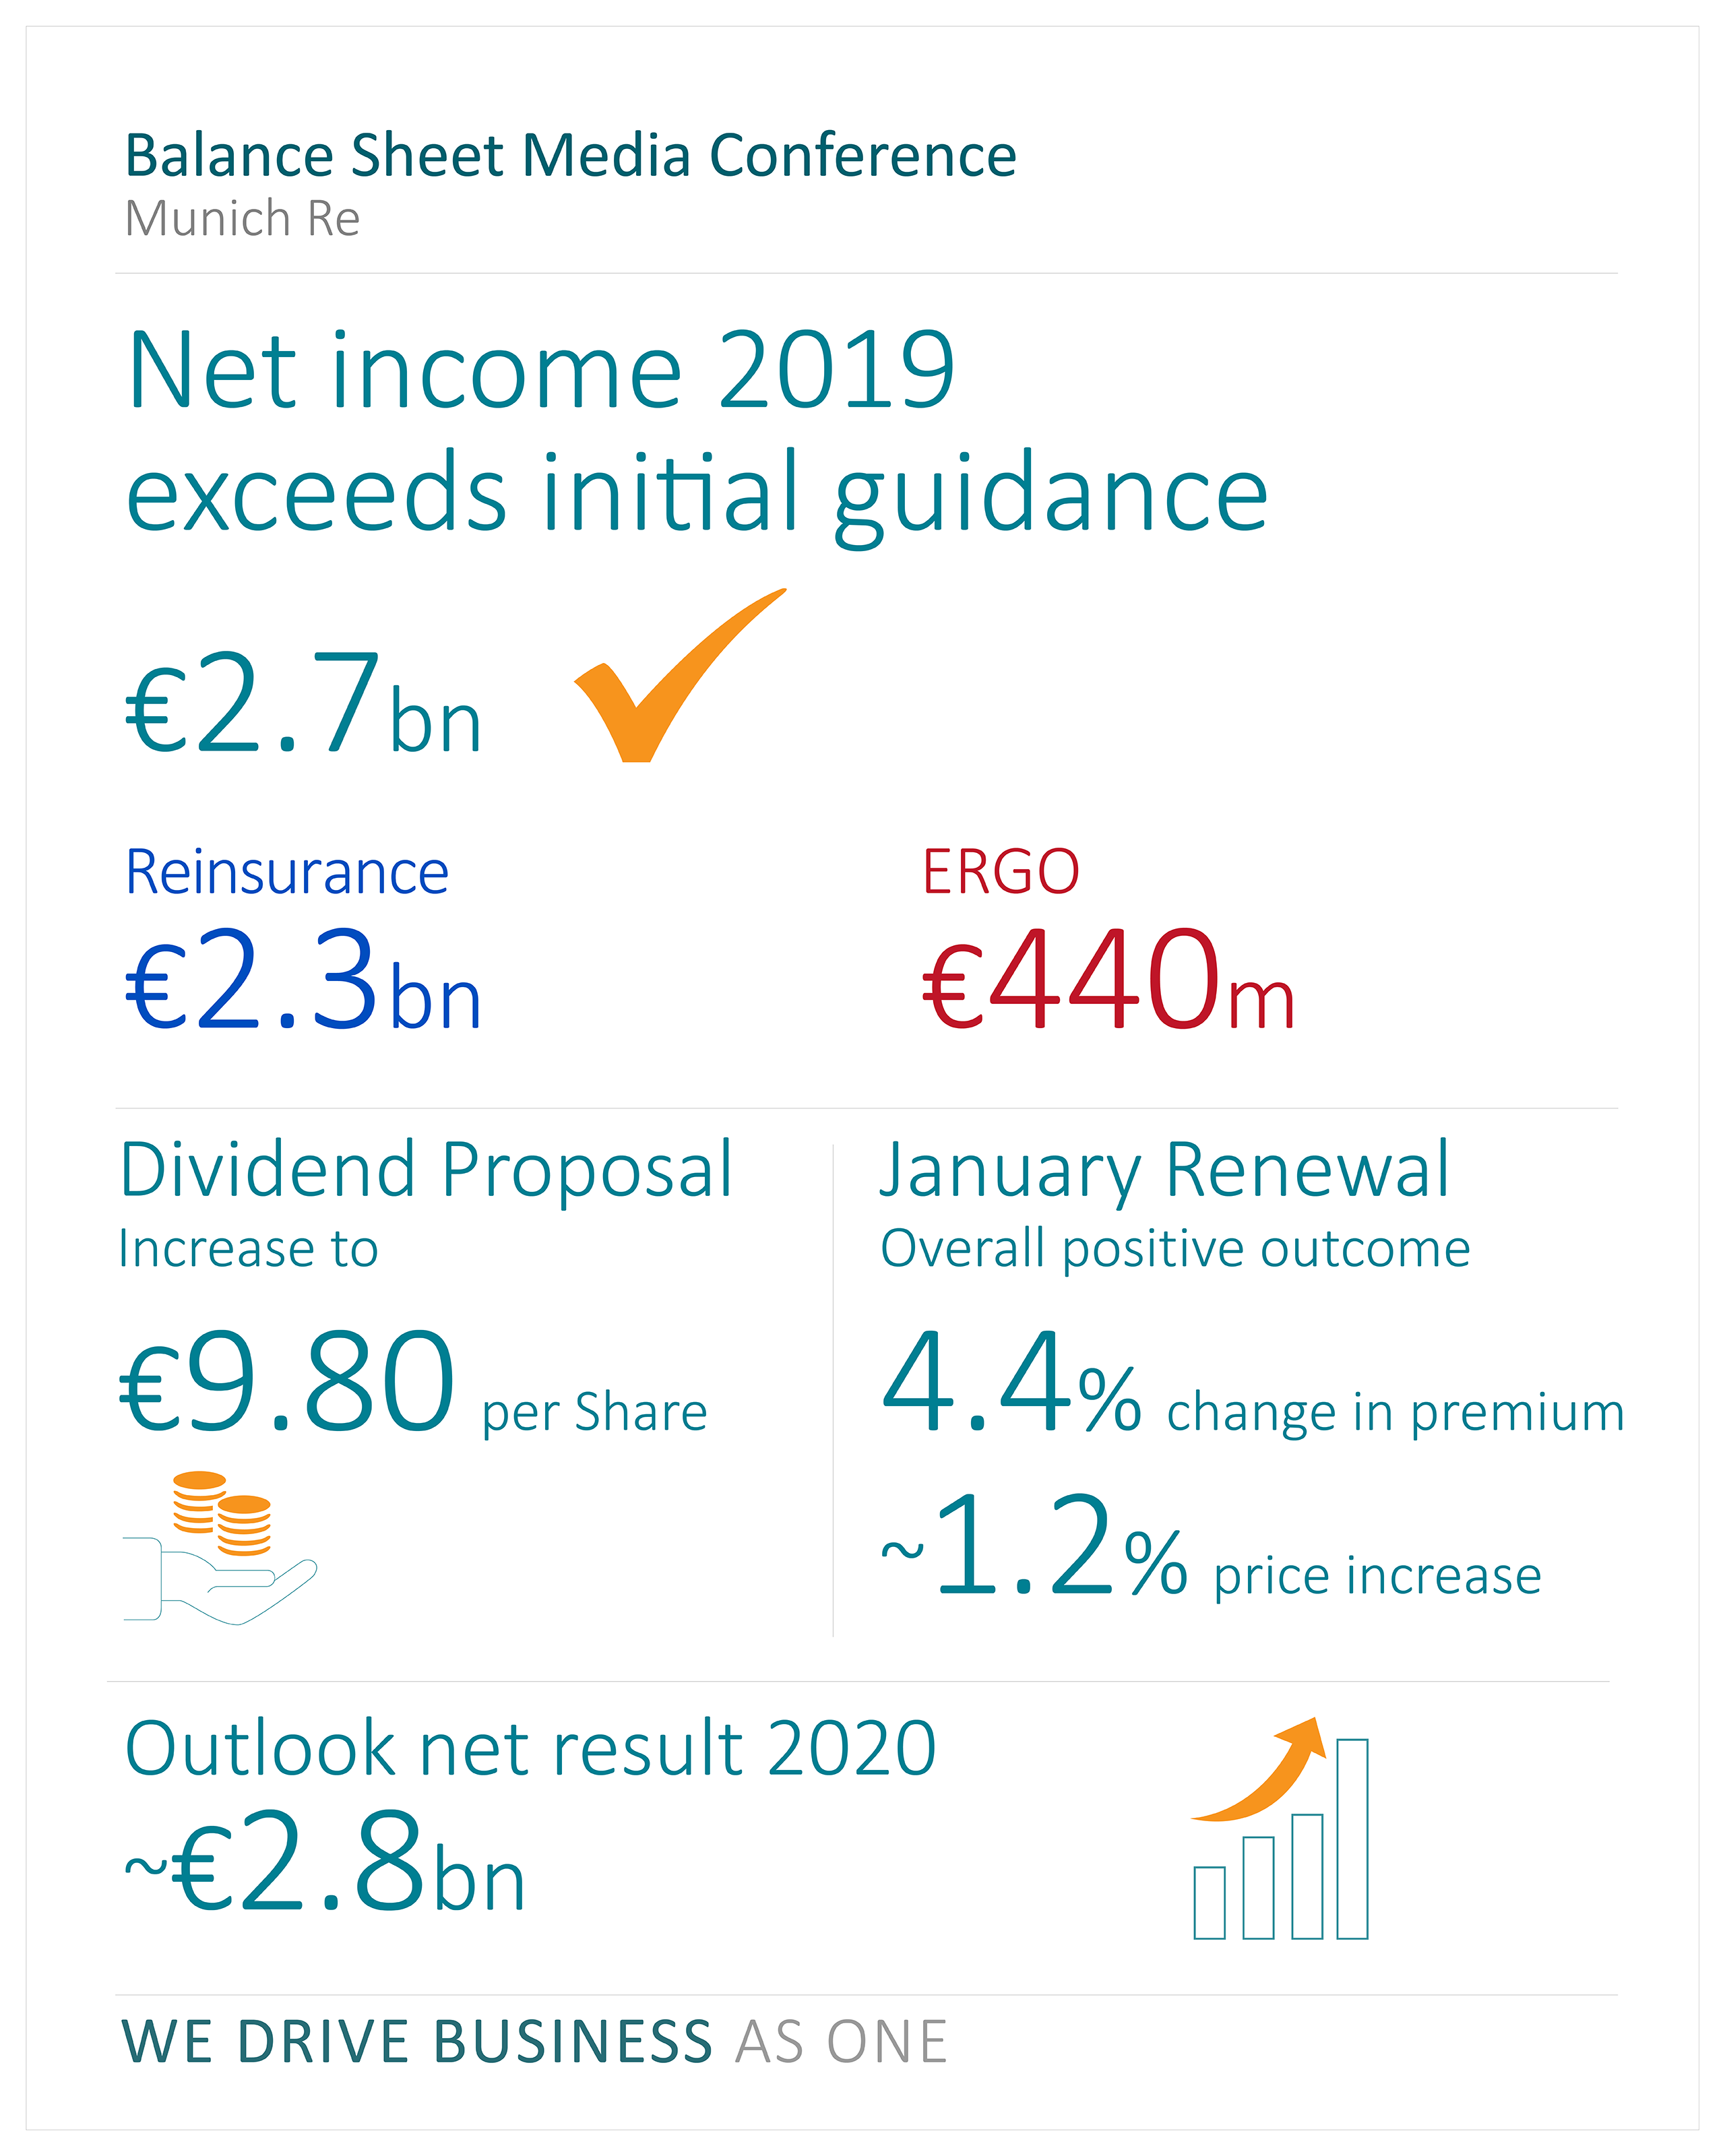 Net income 2019